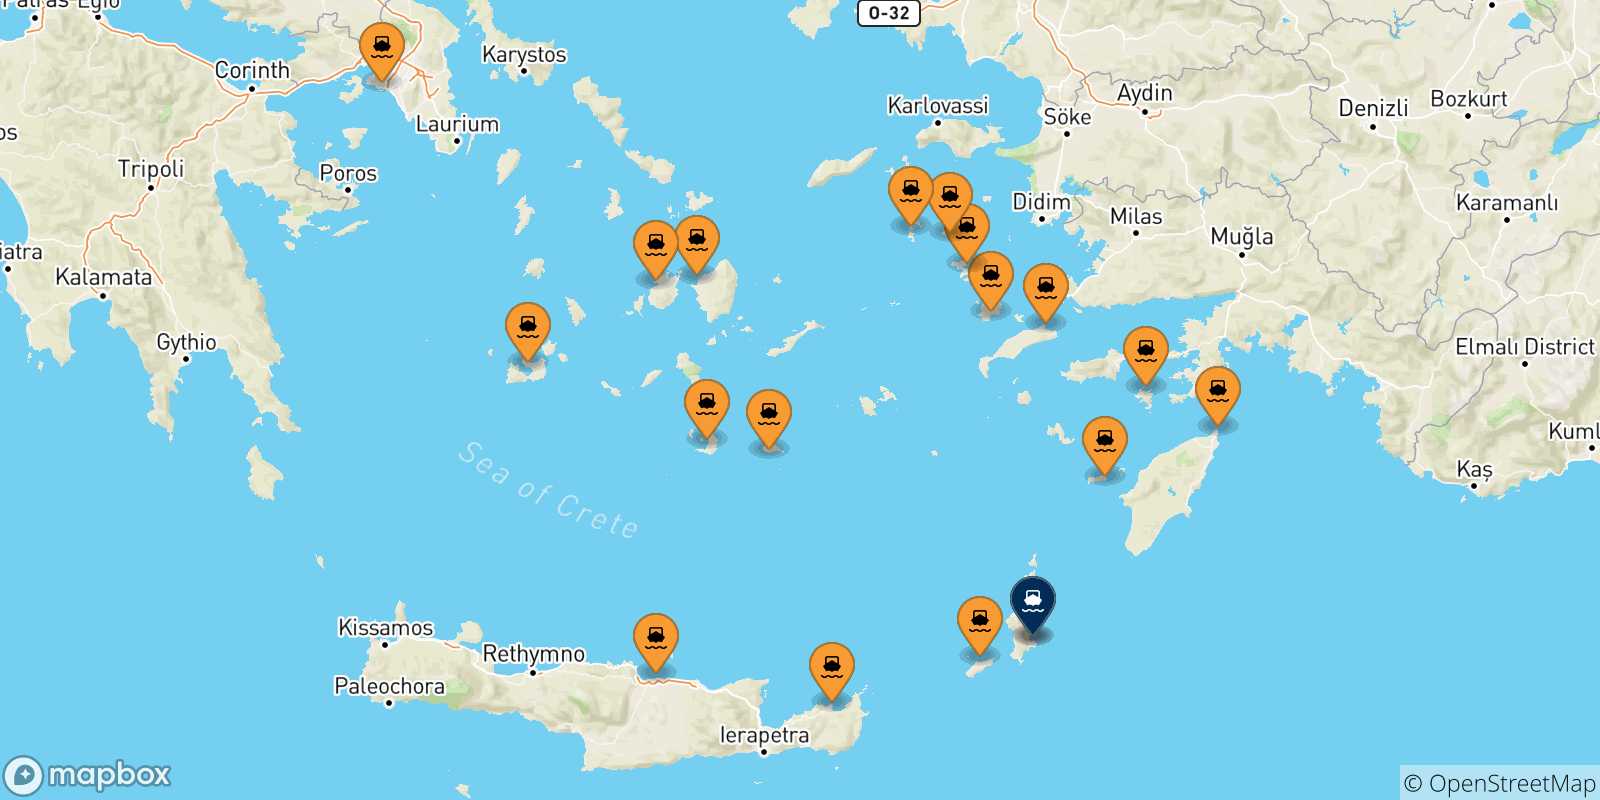 Mappa delle possibili rotte tra la Grecia e Karpathos